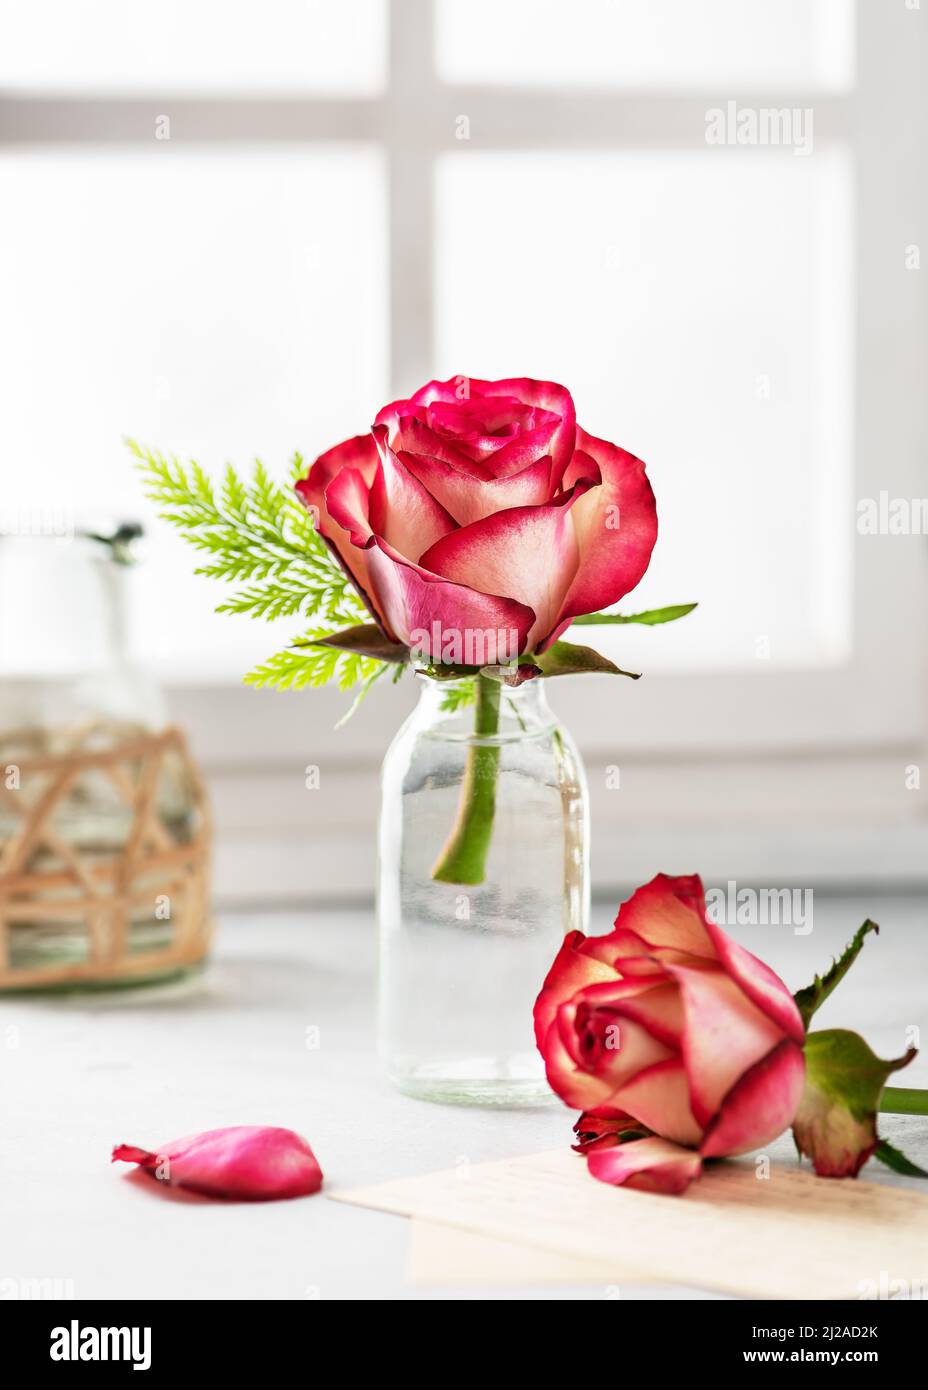 Ramo de rosas rojas de verano en jarrón de cristal cerca de la ventana. Bodegón floral en estilo vintage. Concepto florístico o de decoración del hogar. Foto de stock